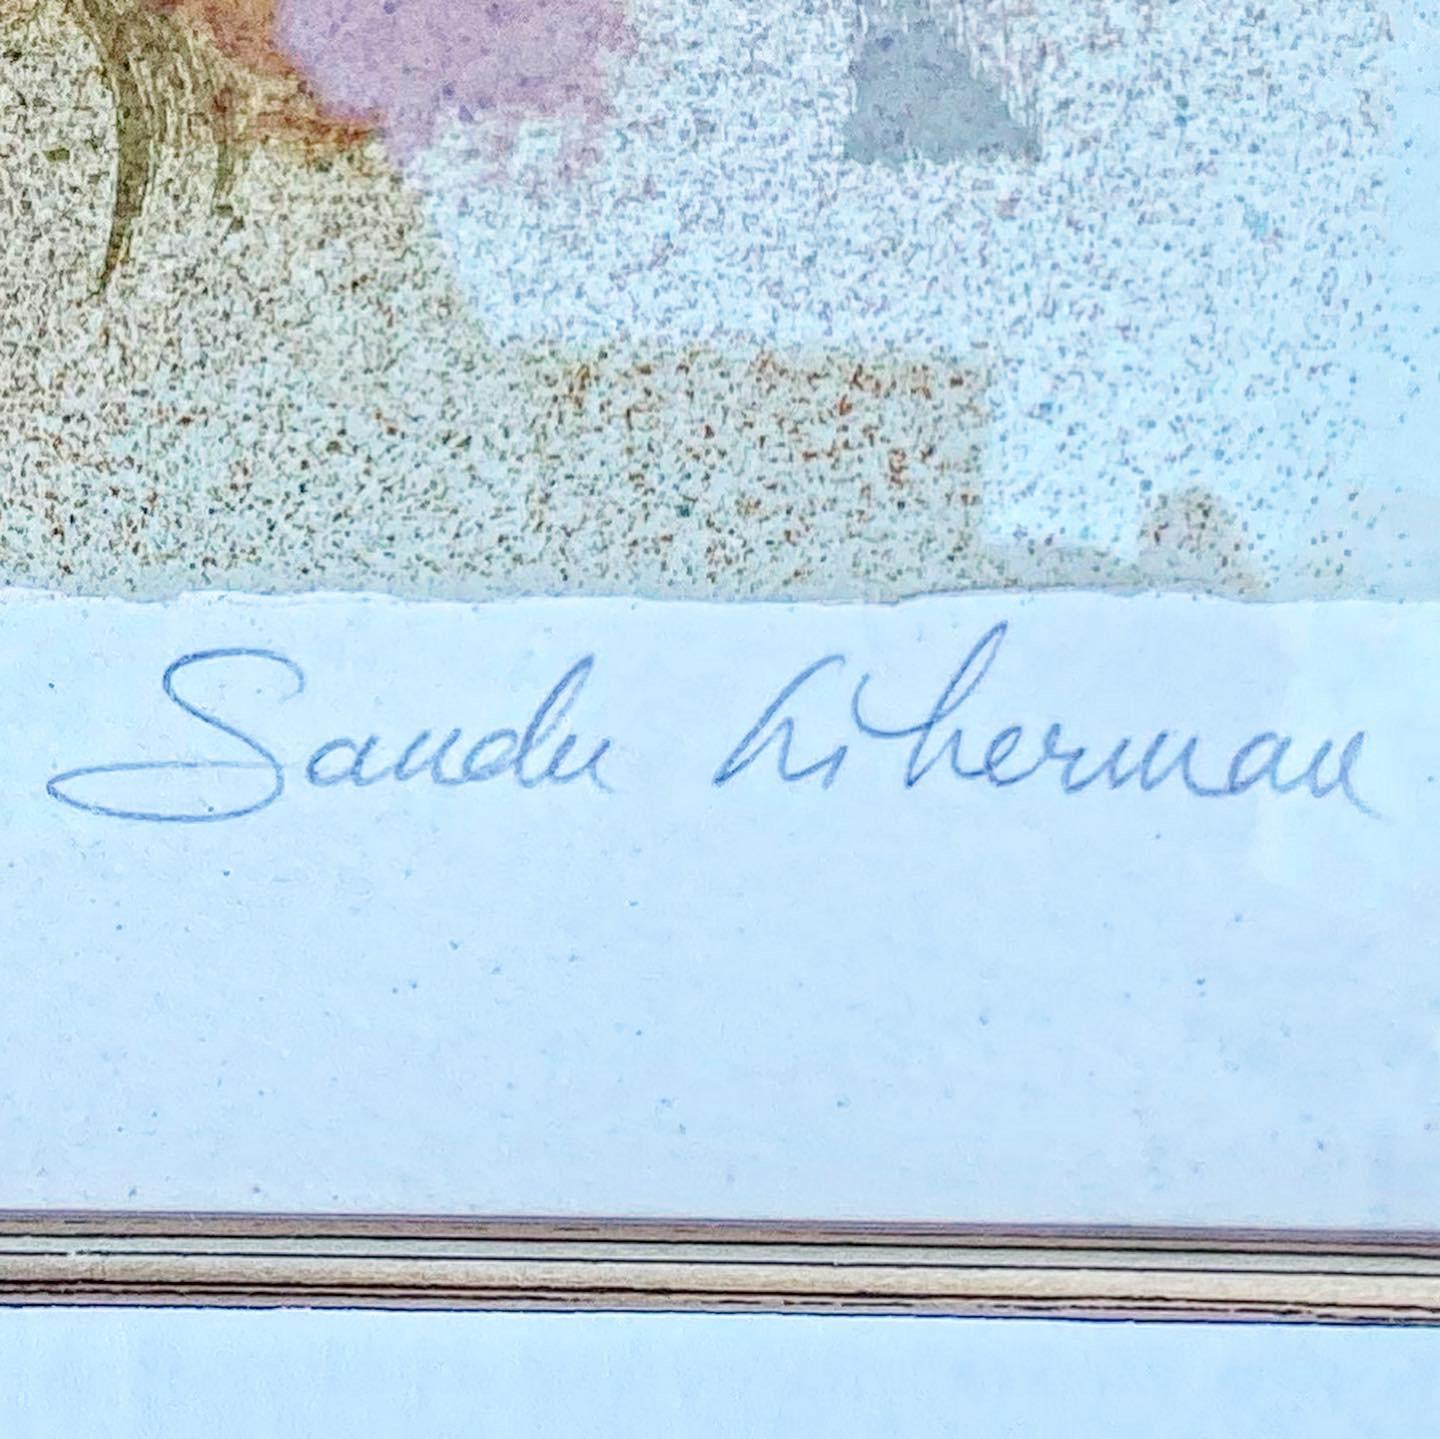 Magnifique lithographie signée et numérotée de Sandu Liberman représentant deux amoureux s'embrassant.

Sandu Liberman était un peintre israélien d'origine roumaine connu pour ses représentations de danseurs, de la vie urbaine et de